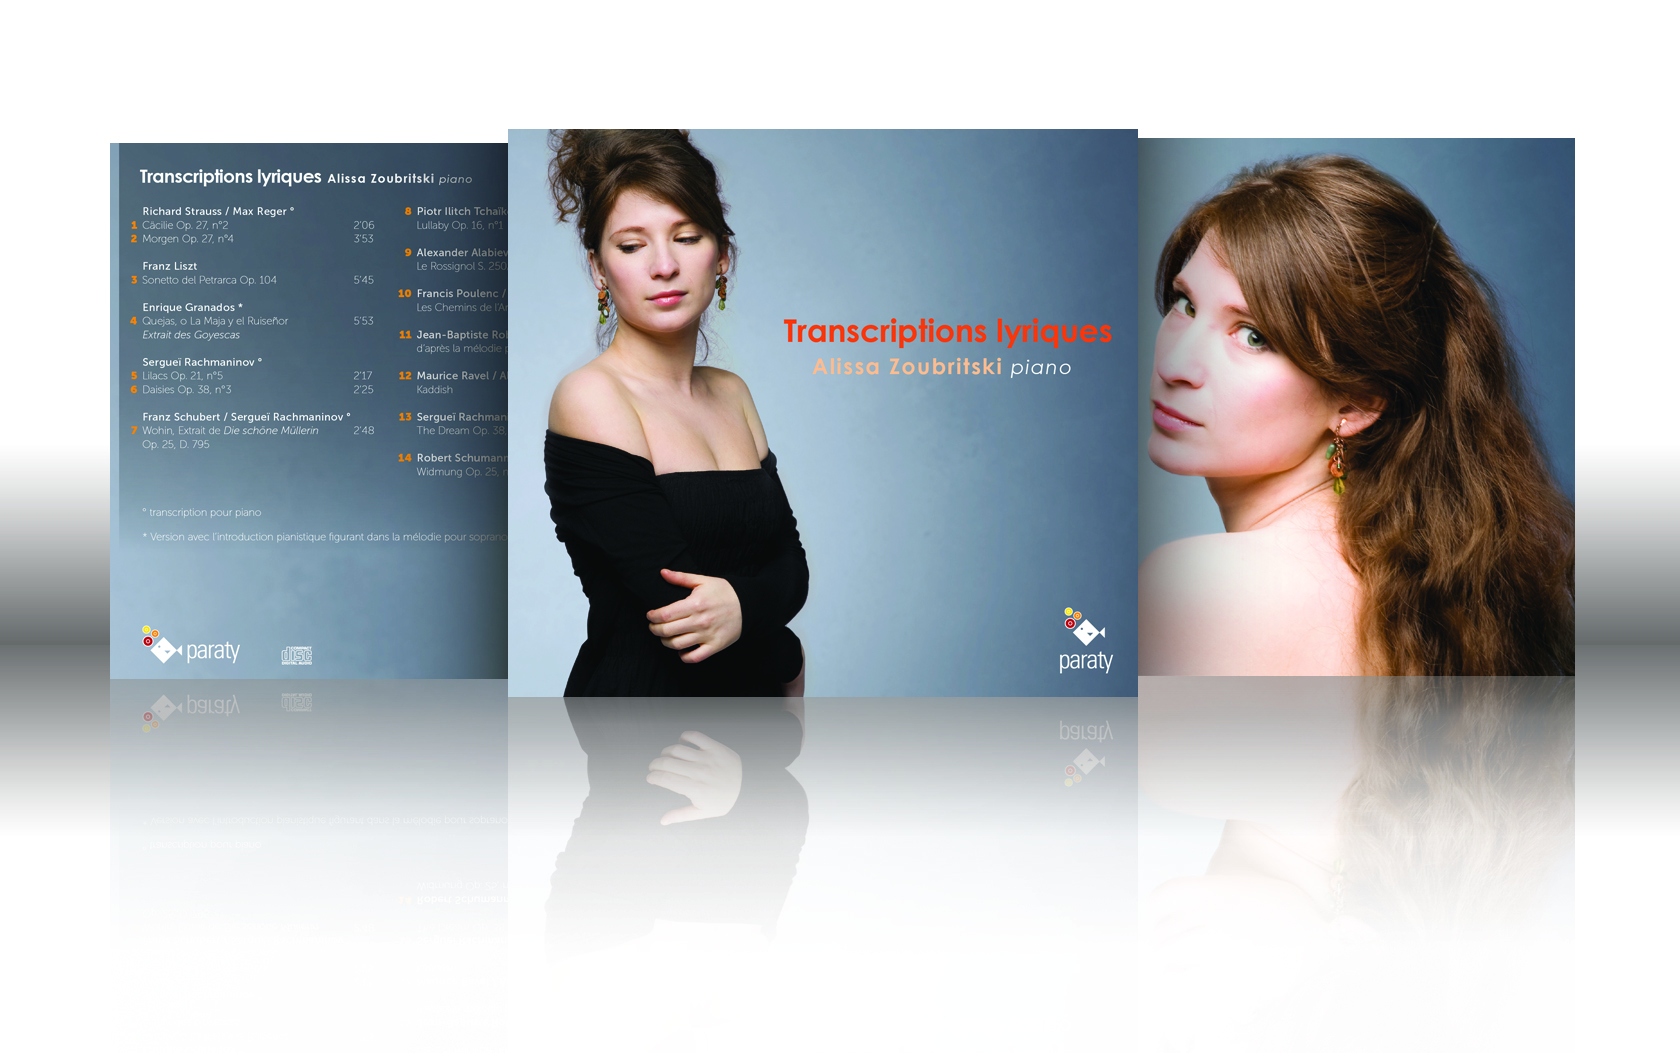 Apple music | Album d’Alissa Zoubristki, un des 10 albums classiques du mois